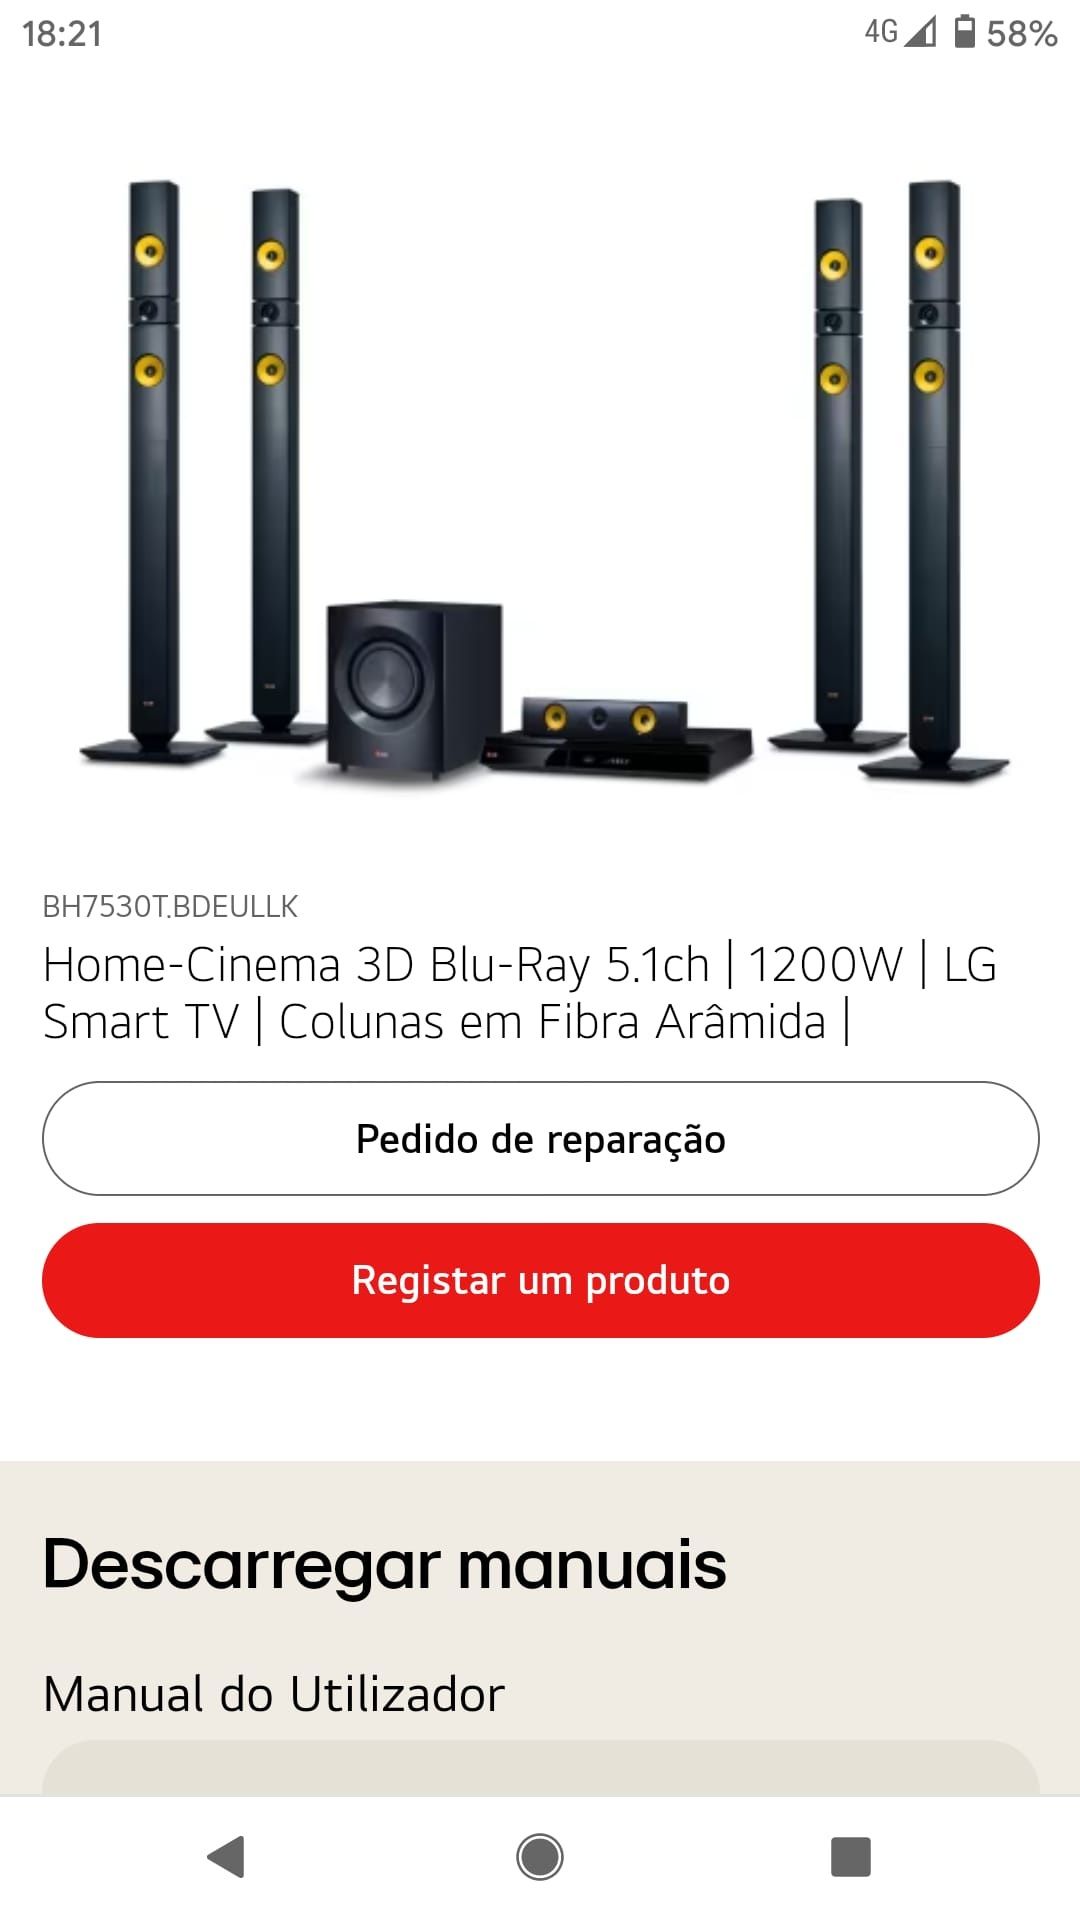 Home-Cinema 3D Blu-Ray 5.1ch | 1200W | LG Smart TV | Colunas em Fibra